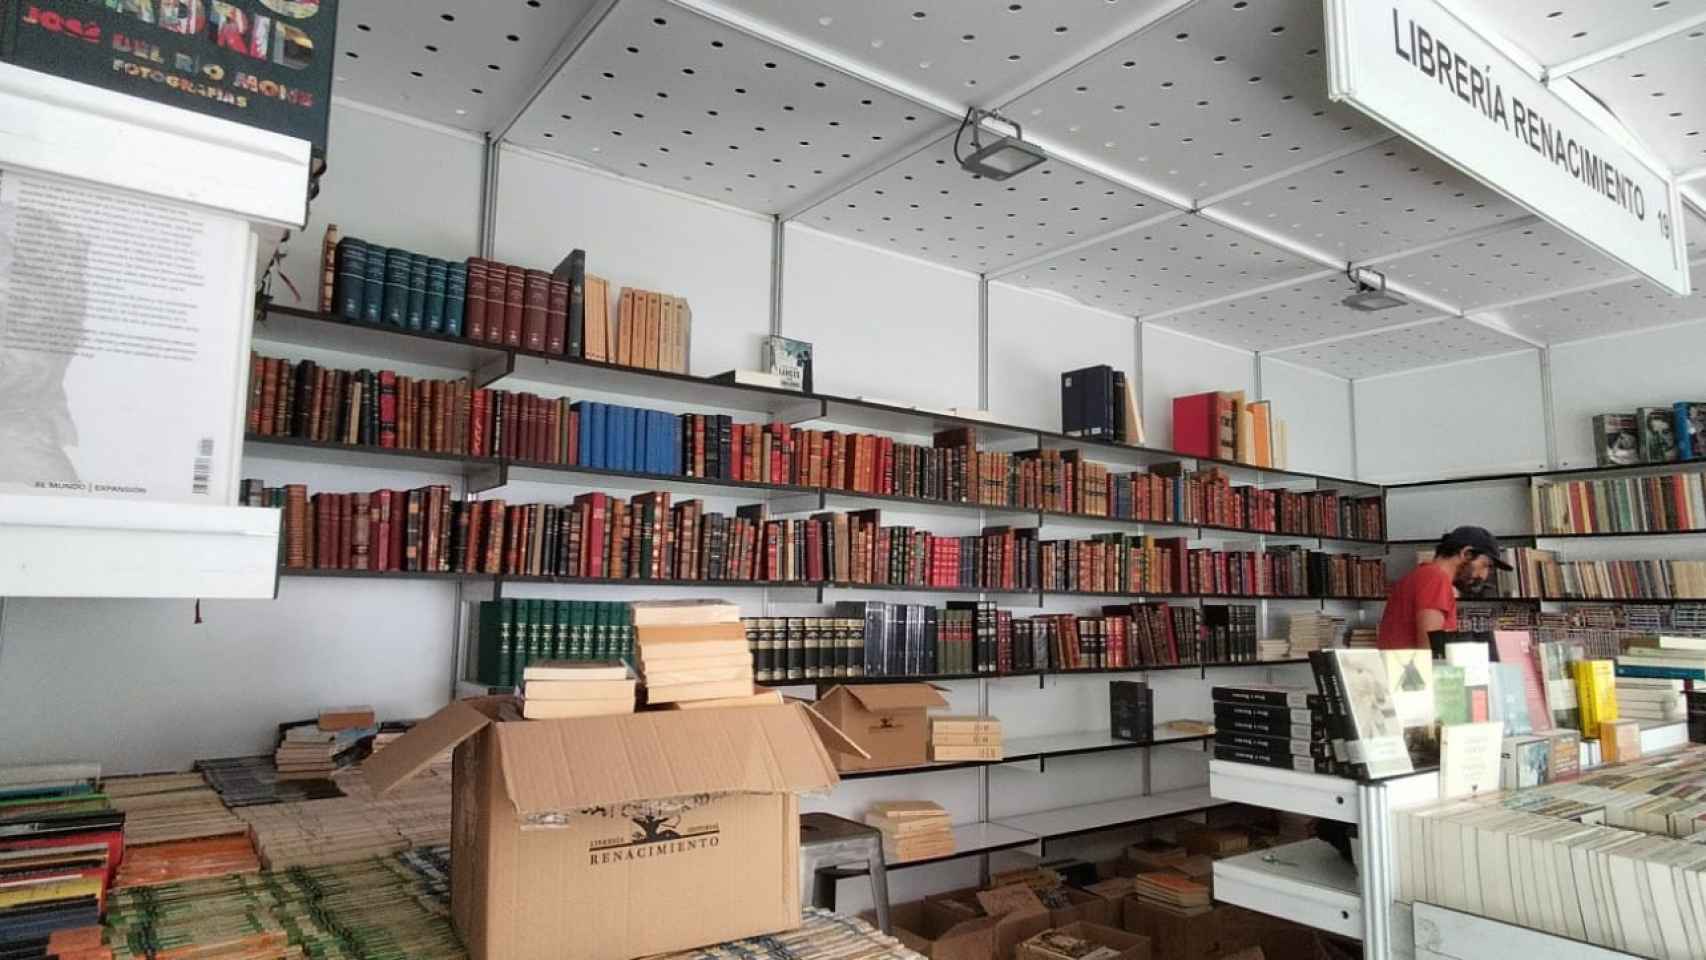 La caseta de Renacimiento, en pleno montaje para la 45ª Feria del Libro Antiguo y de Ocasión de Madrid